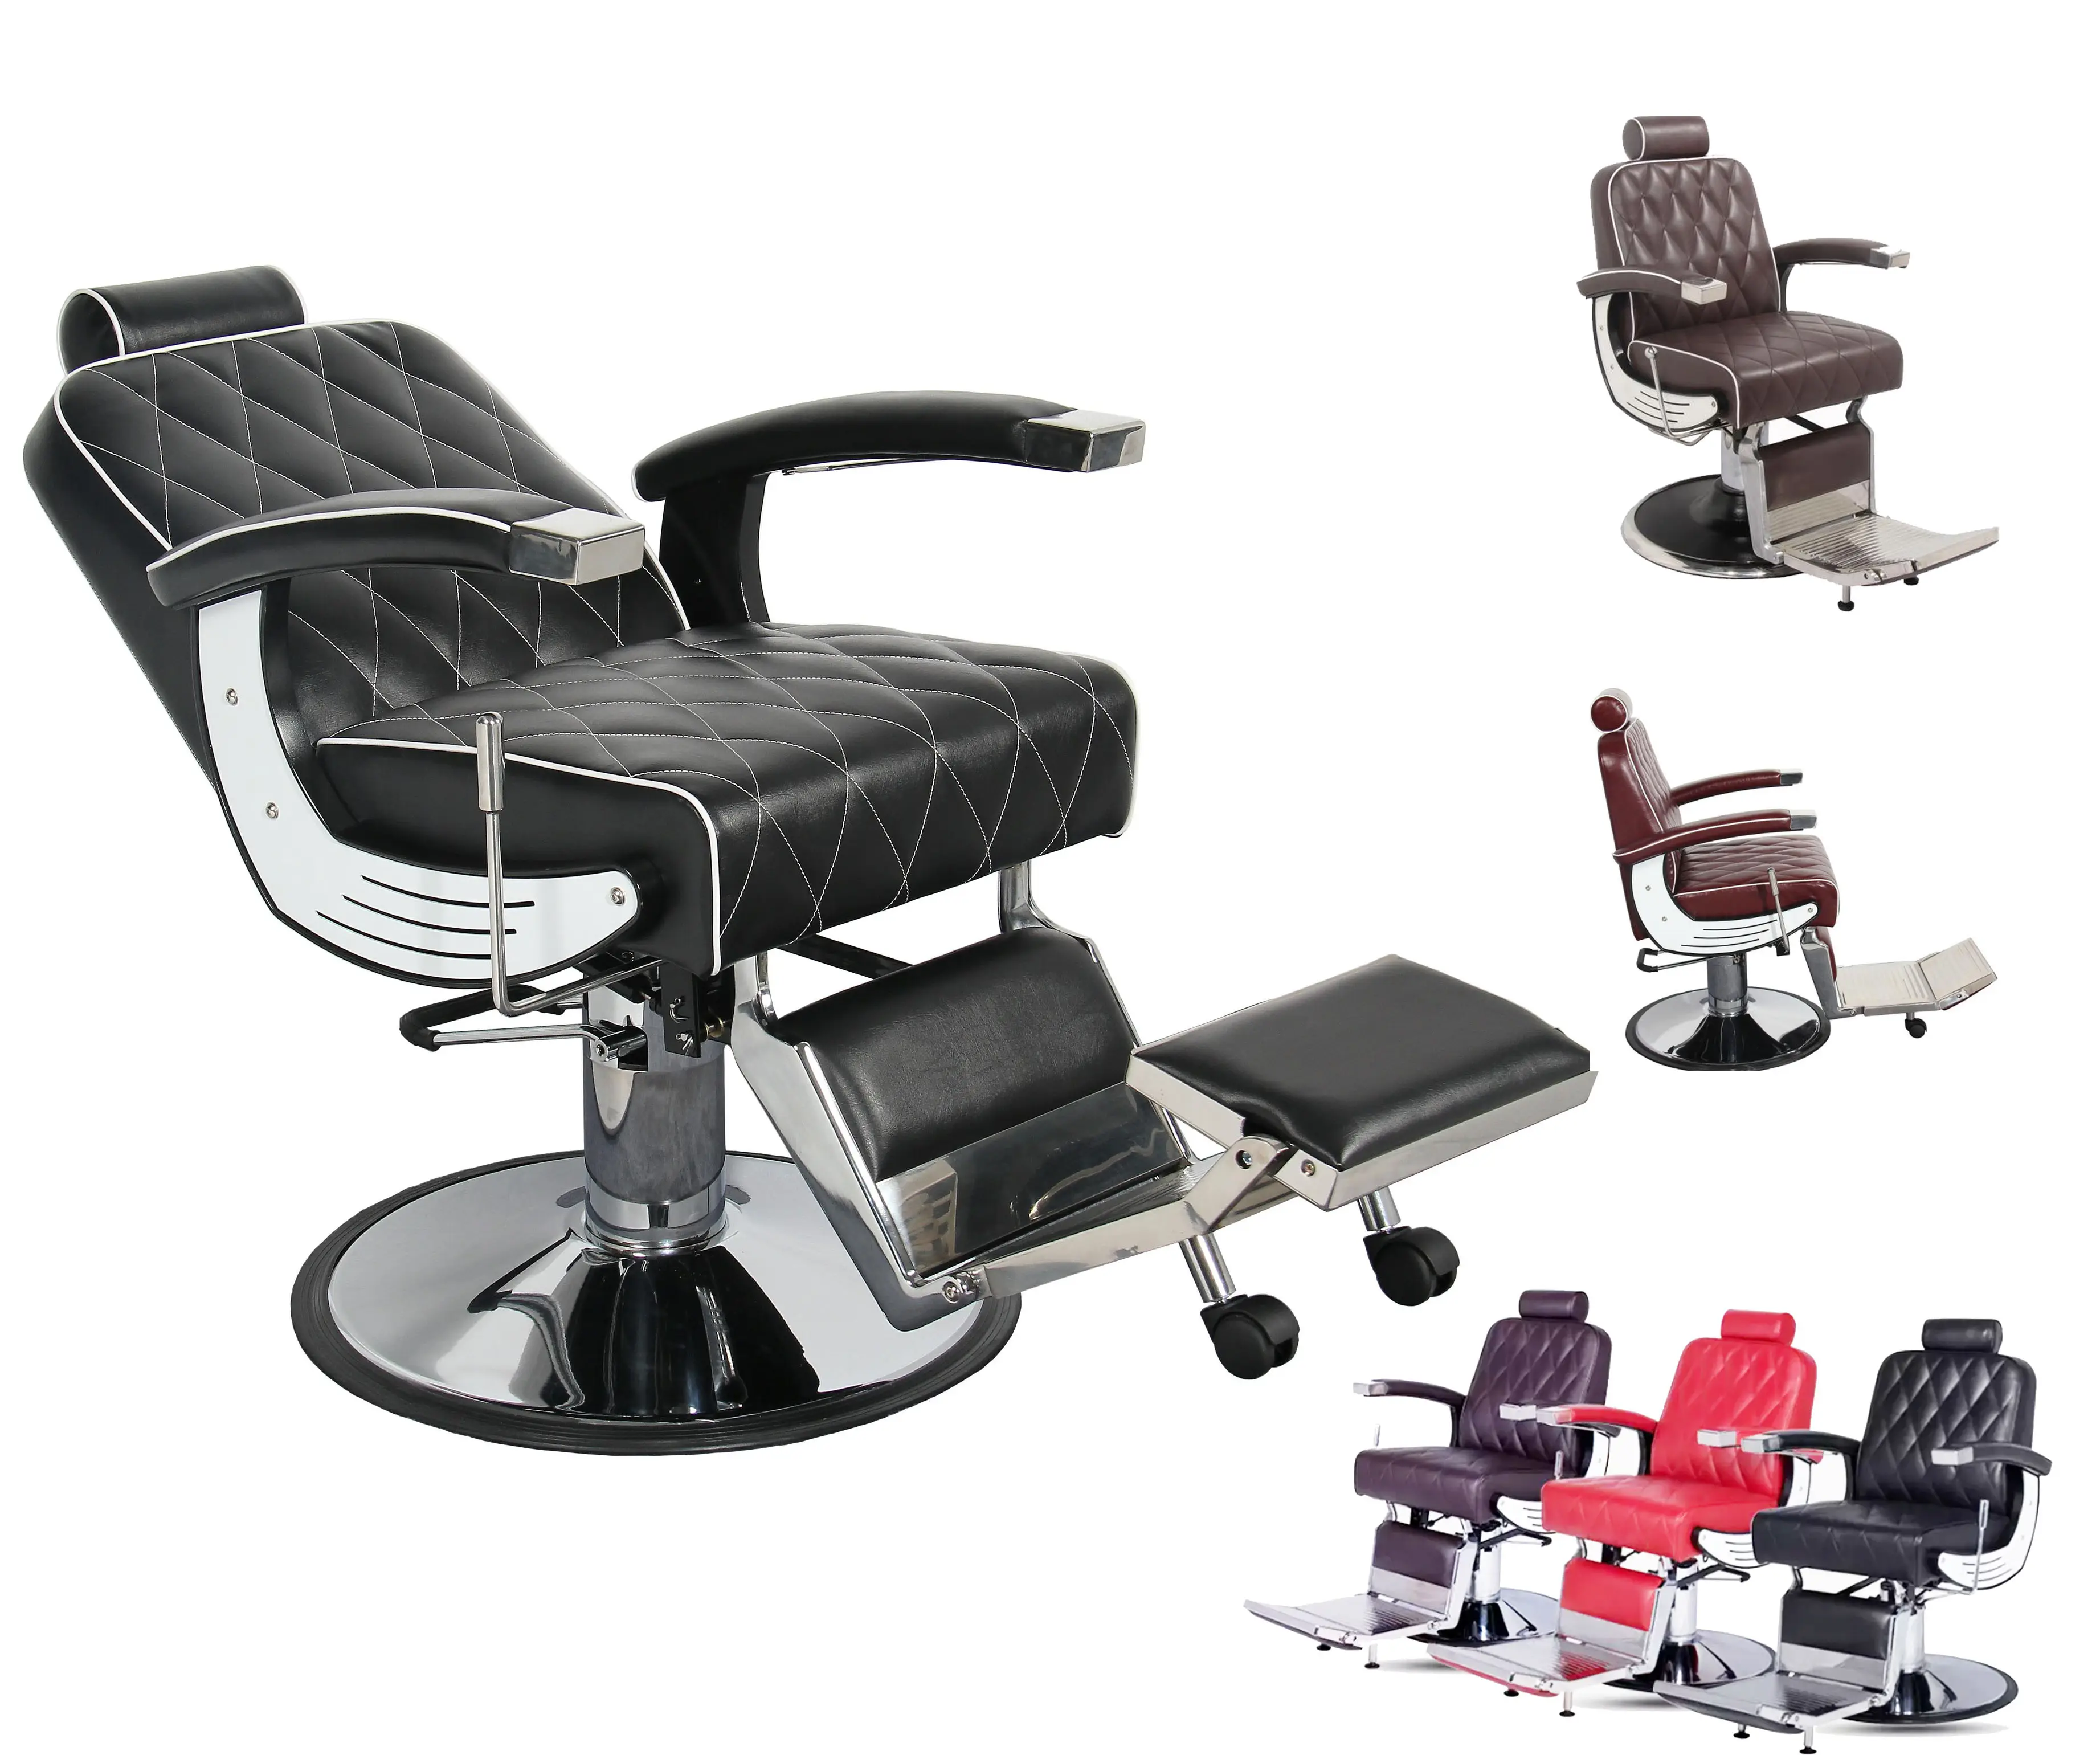 Наклонный гидравлический насос парикмахерское кресло в наличии для продажи с высоким качеством парикмахерское кресло парикмахерский салон мебели